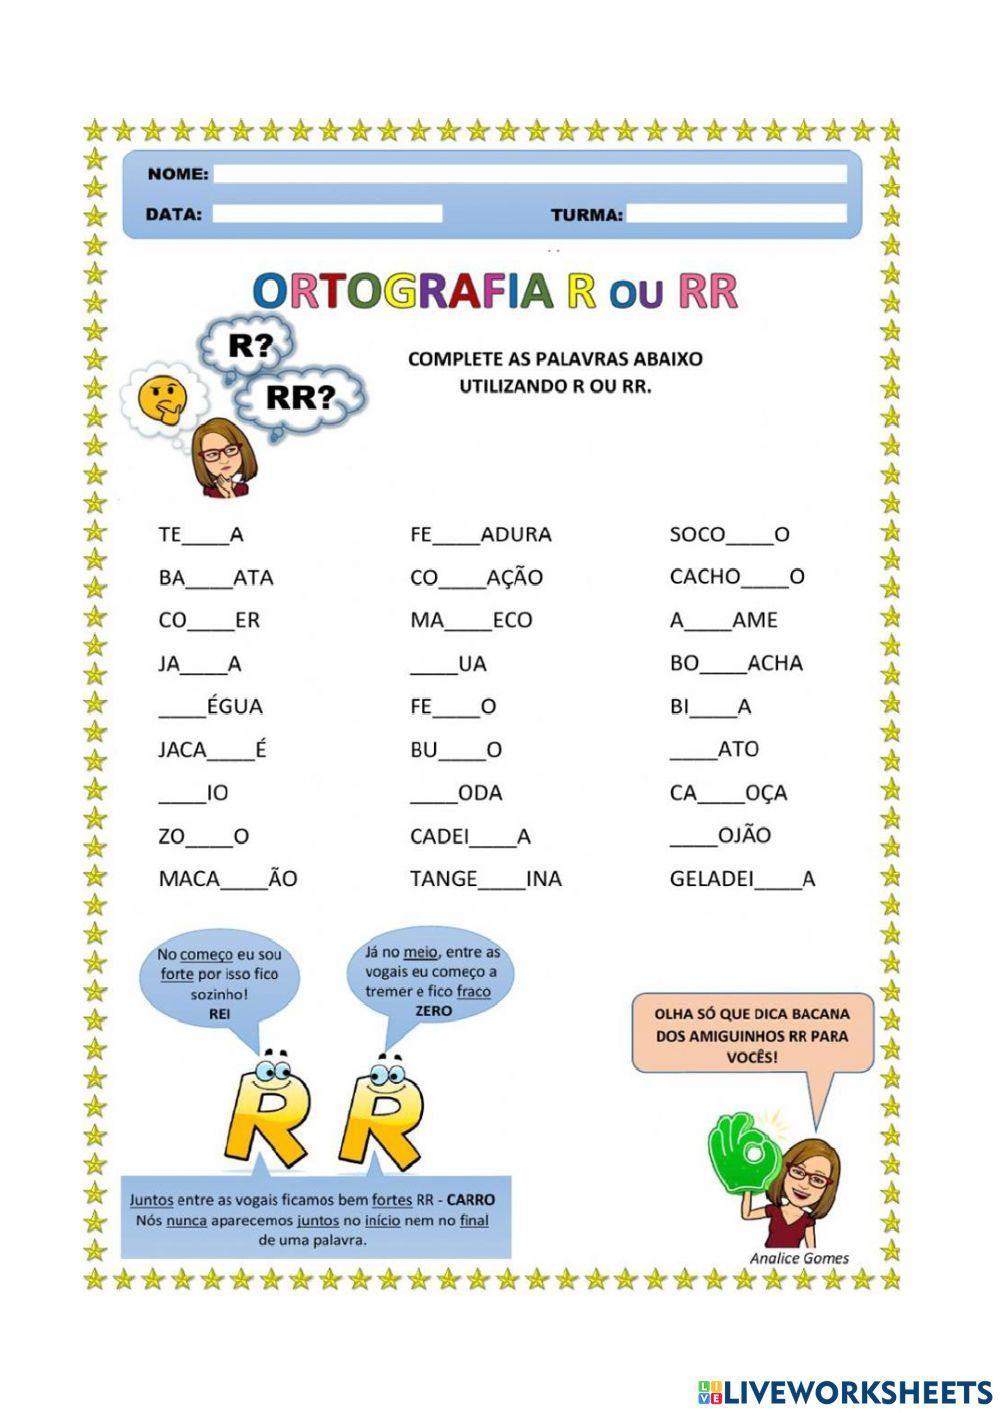 Ortografia r-rr online exercise for